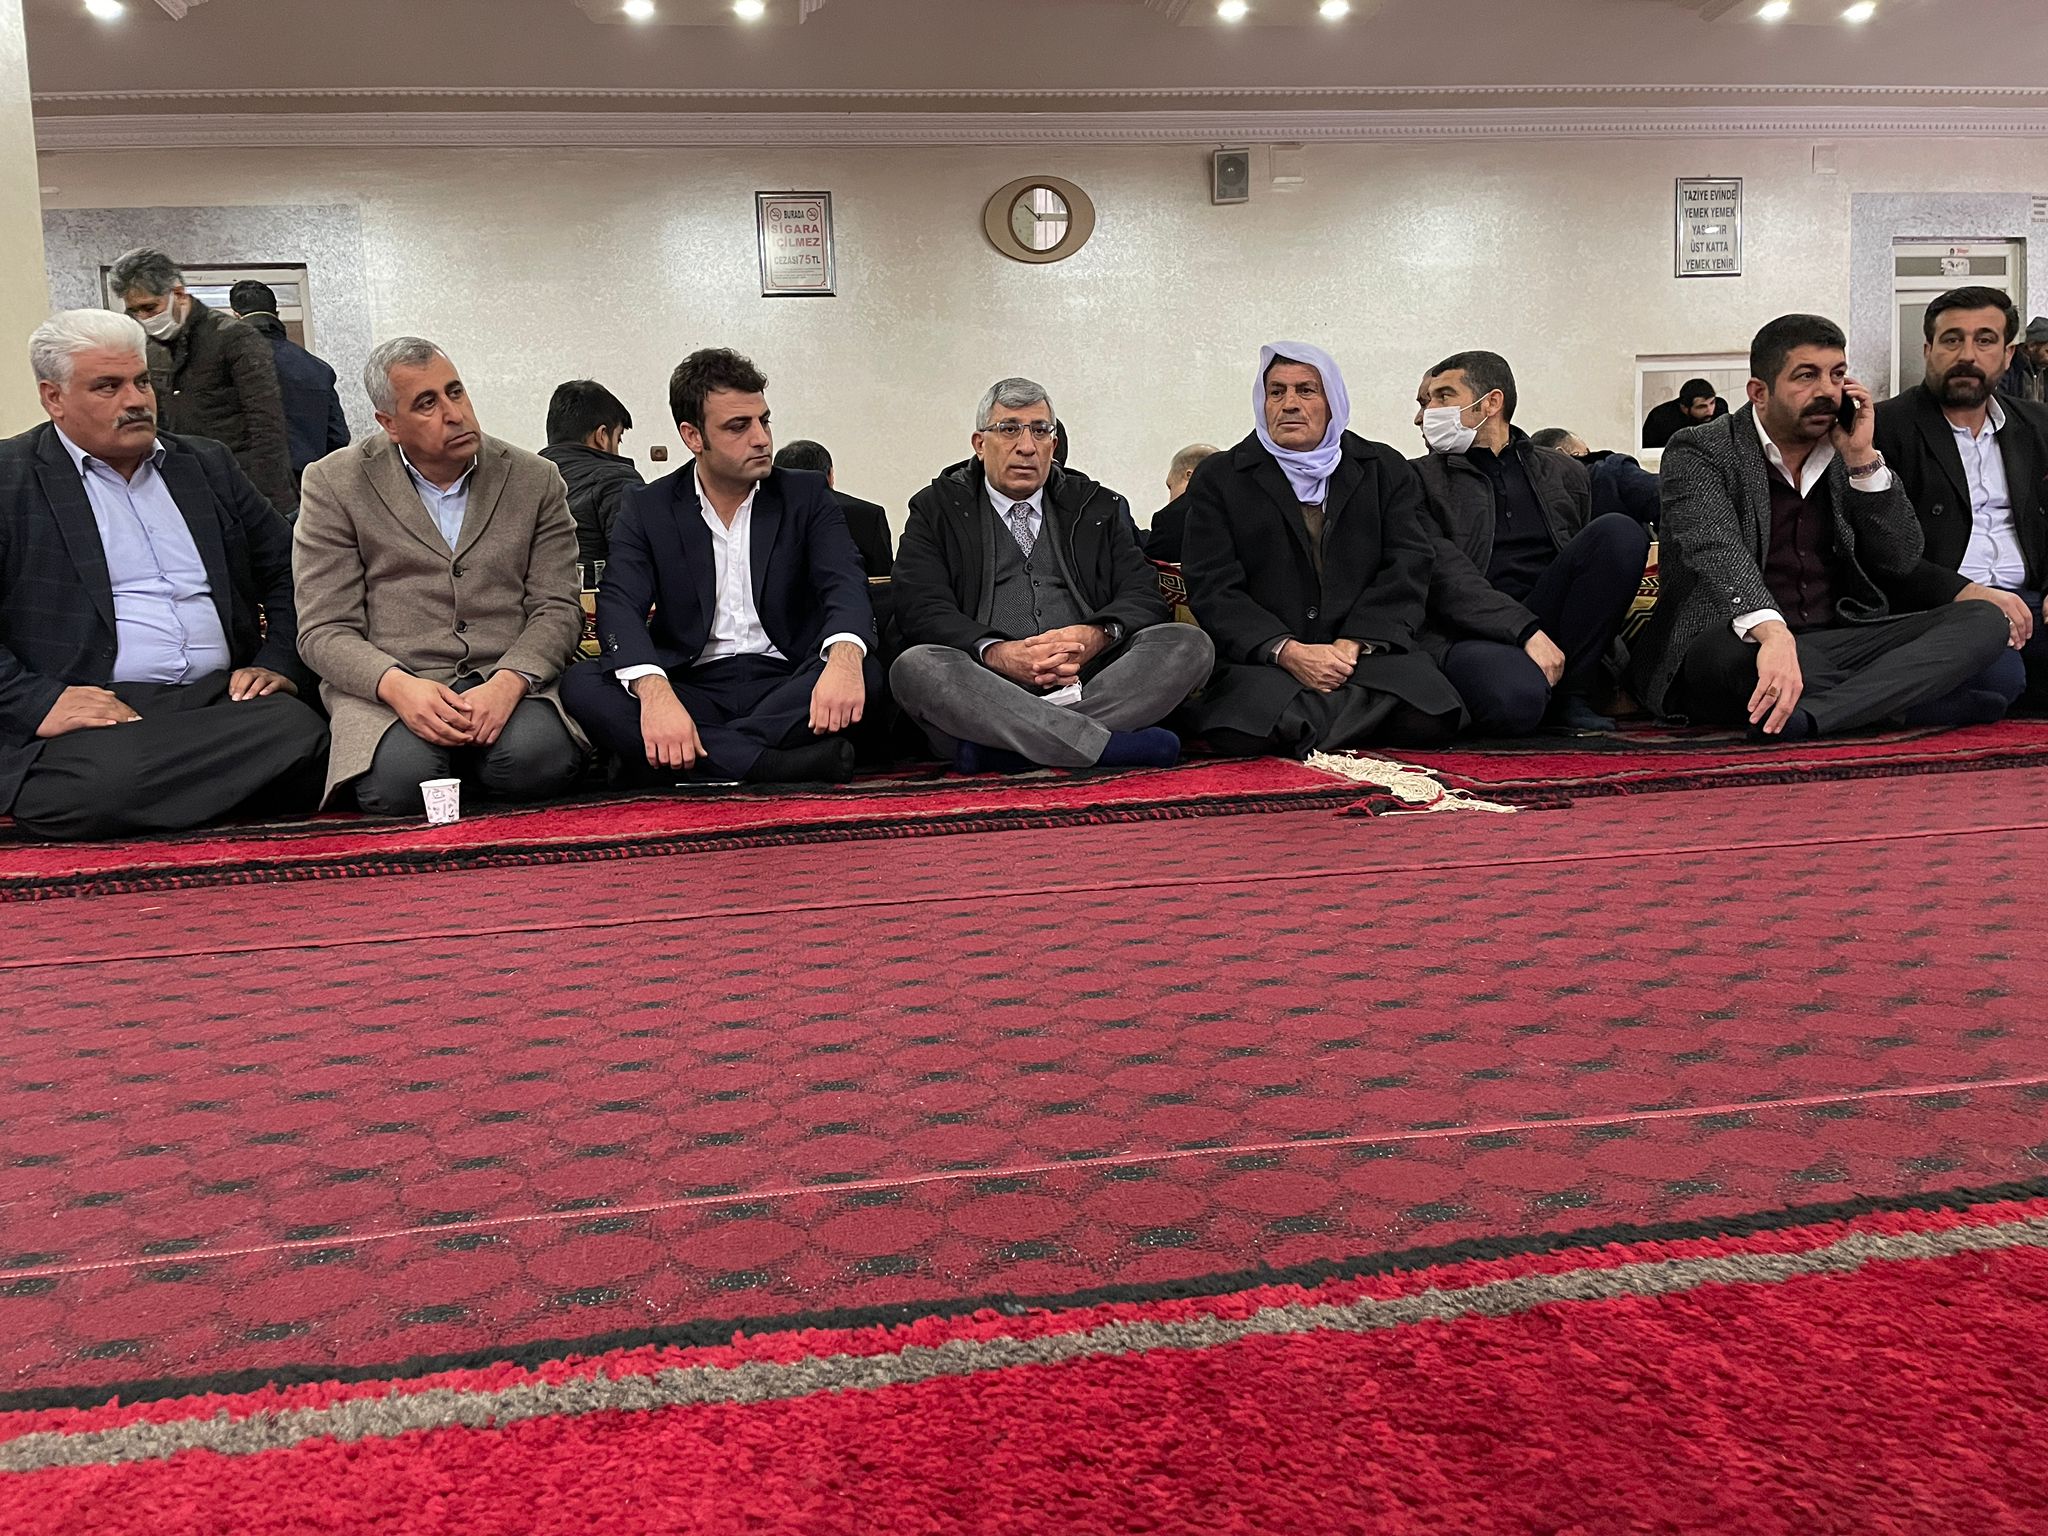 Çalka Ailesinin Taziye ziyaretine katılarak  Başsağlığı dileklerimizi ilettik.  @Ahmet_Davutoglu  @SelimTemurci